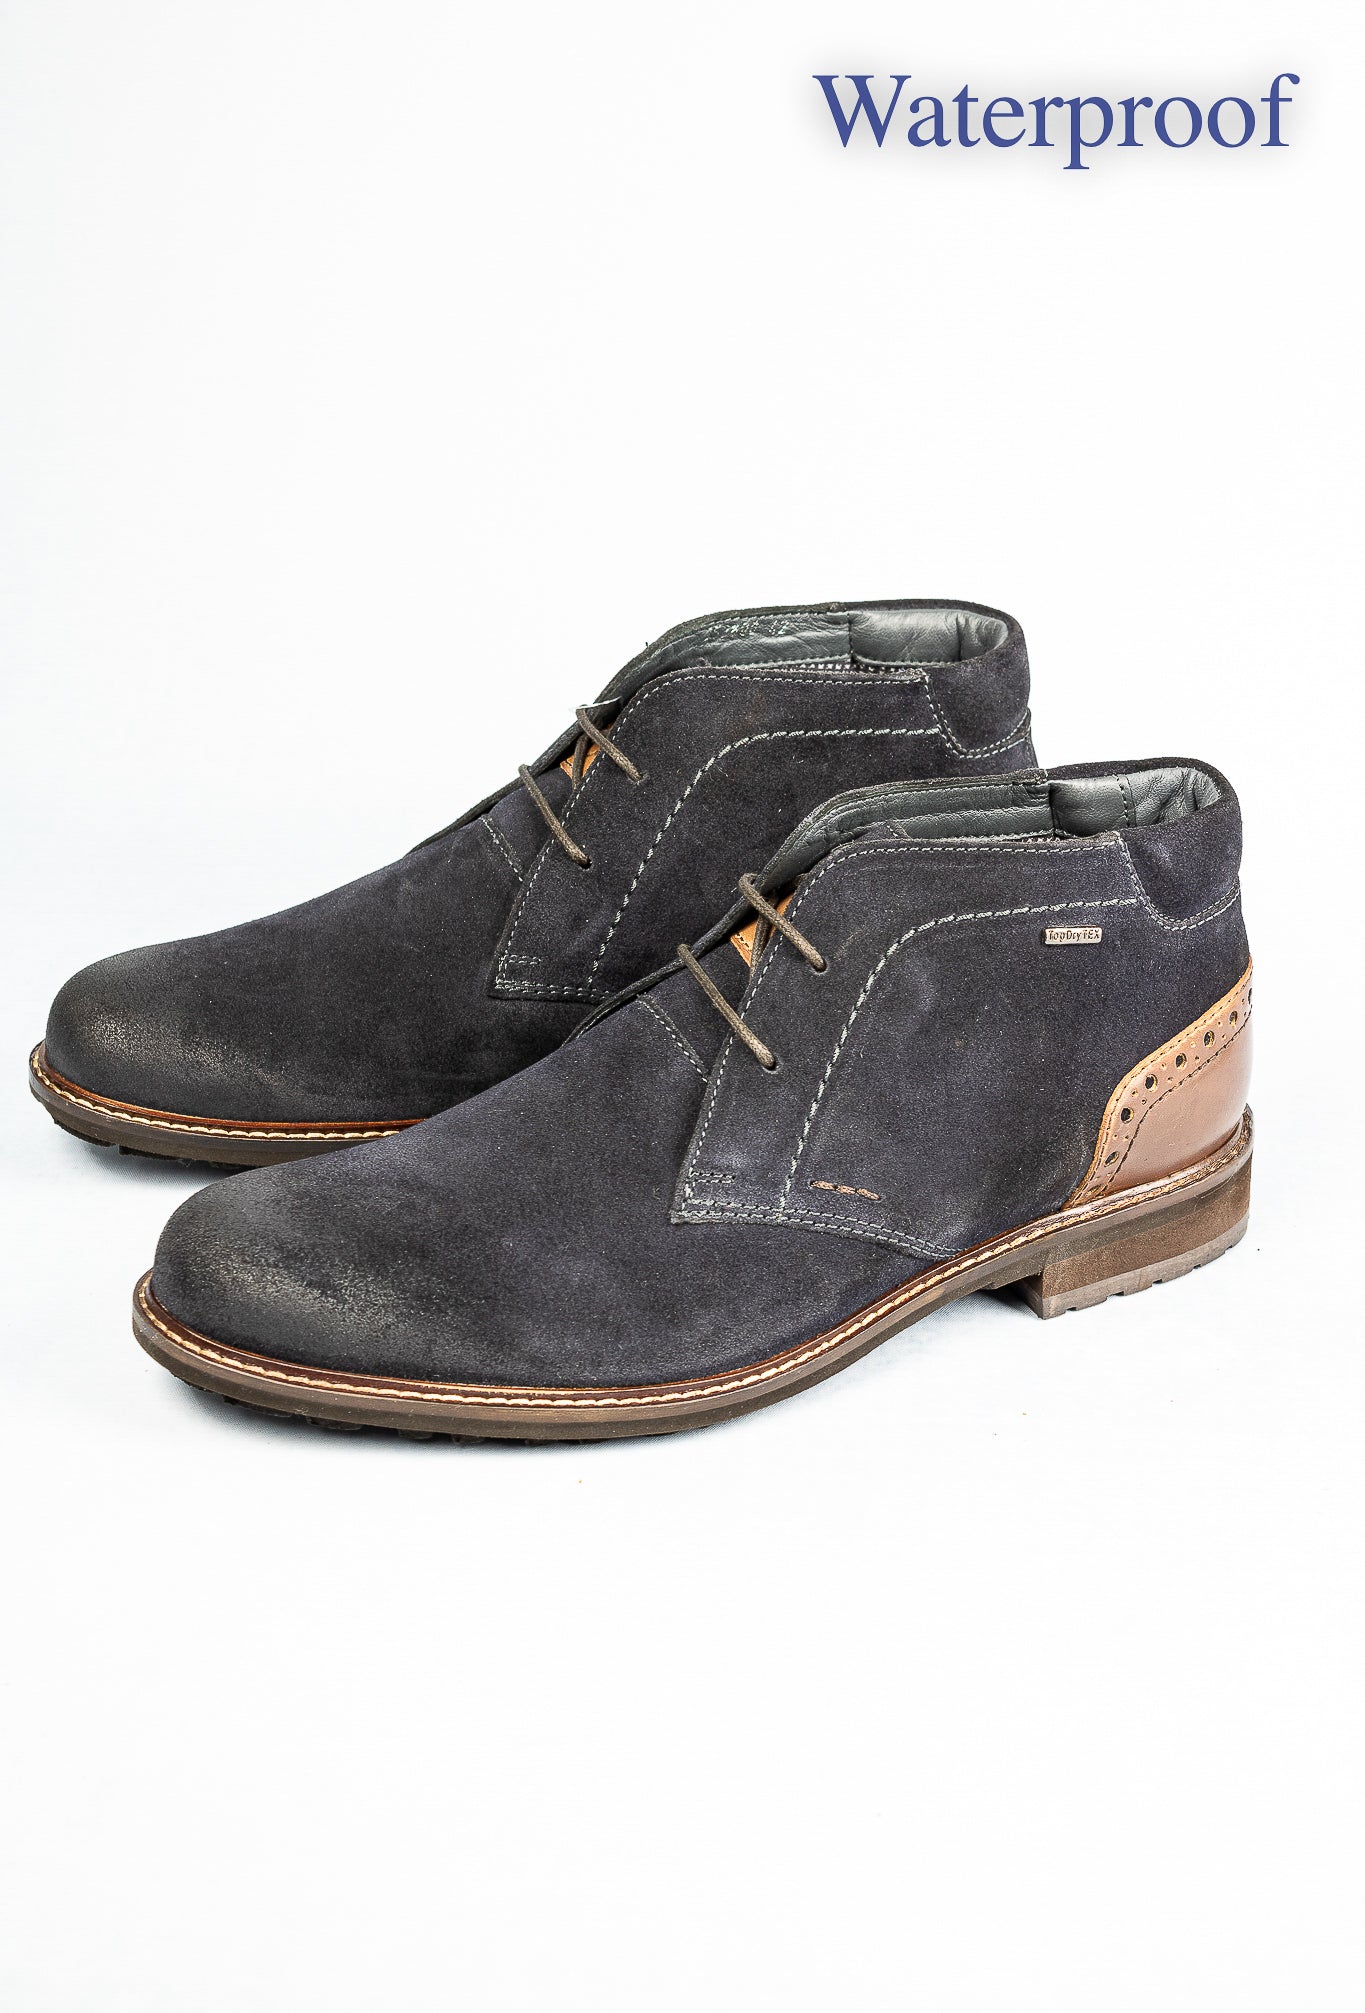 Josef Seibel Jasper 51 Suede Men's Boots for sale online ireland